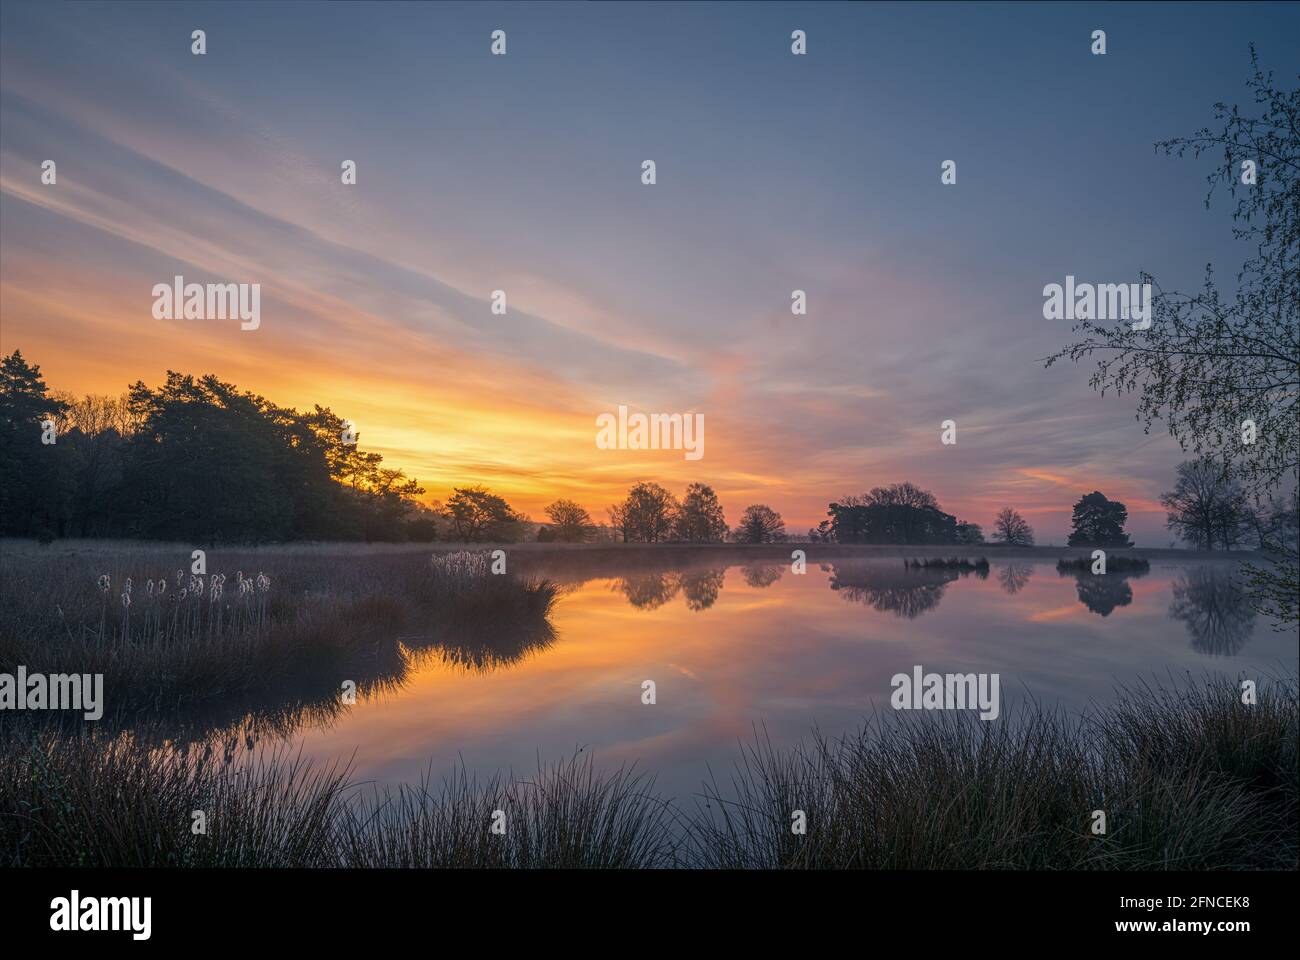 In un lago di brughiera sul Dwingelderveld in provincia di Drenthe nei Paesi Bassi, l'alba colora il cielo. Dwingeloo, Drenthe, Paesi Bassi Foto Stock